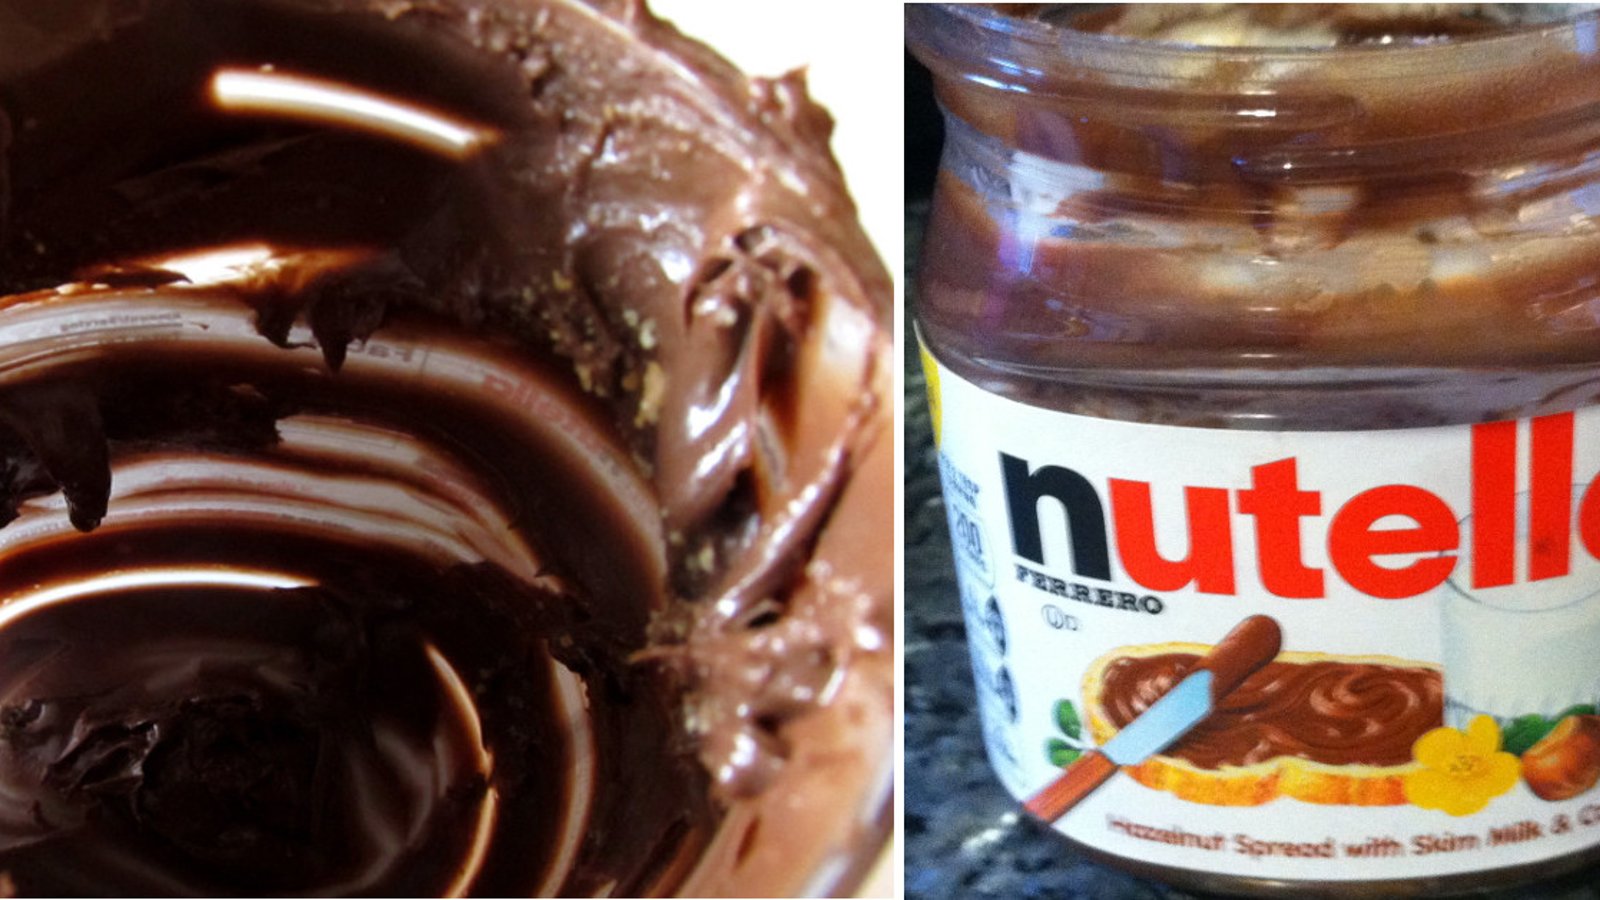 Le pot de Nutella est tellement difficile à vider complètement! Voici les 2 meilleures astuces pour vider un pot, sans gaspillage! 